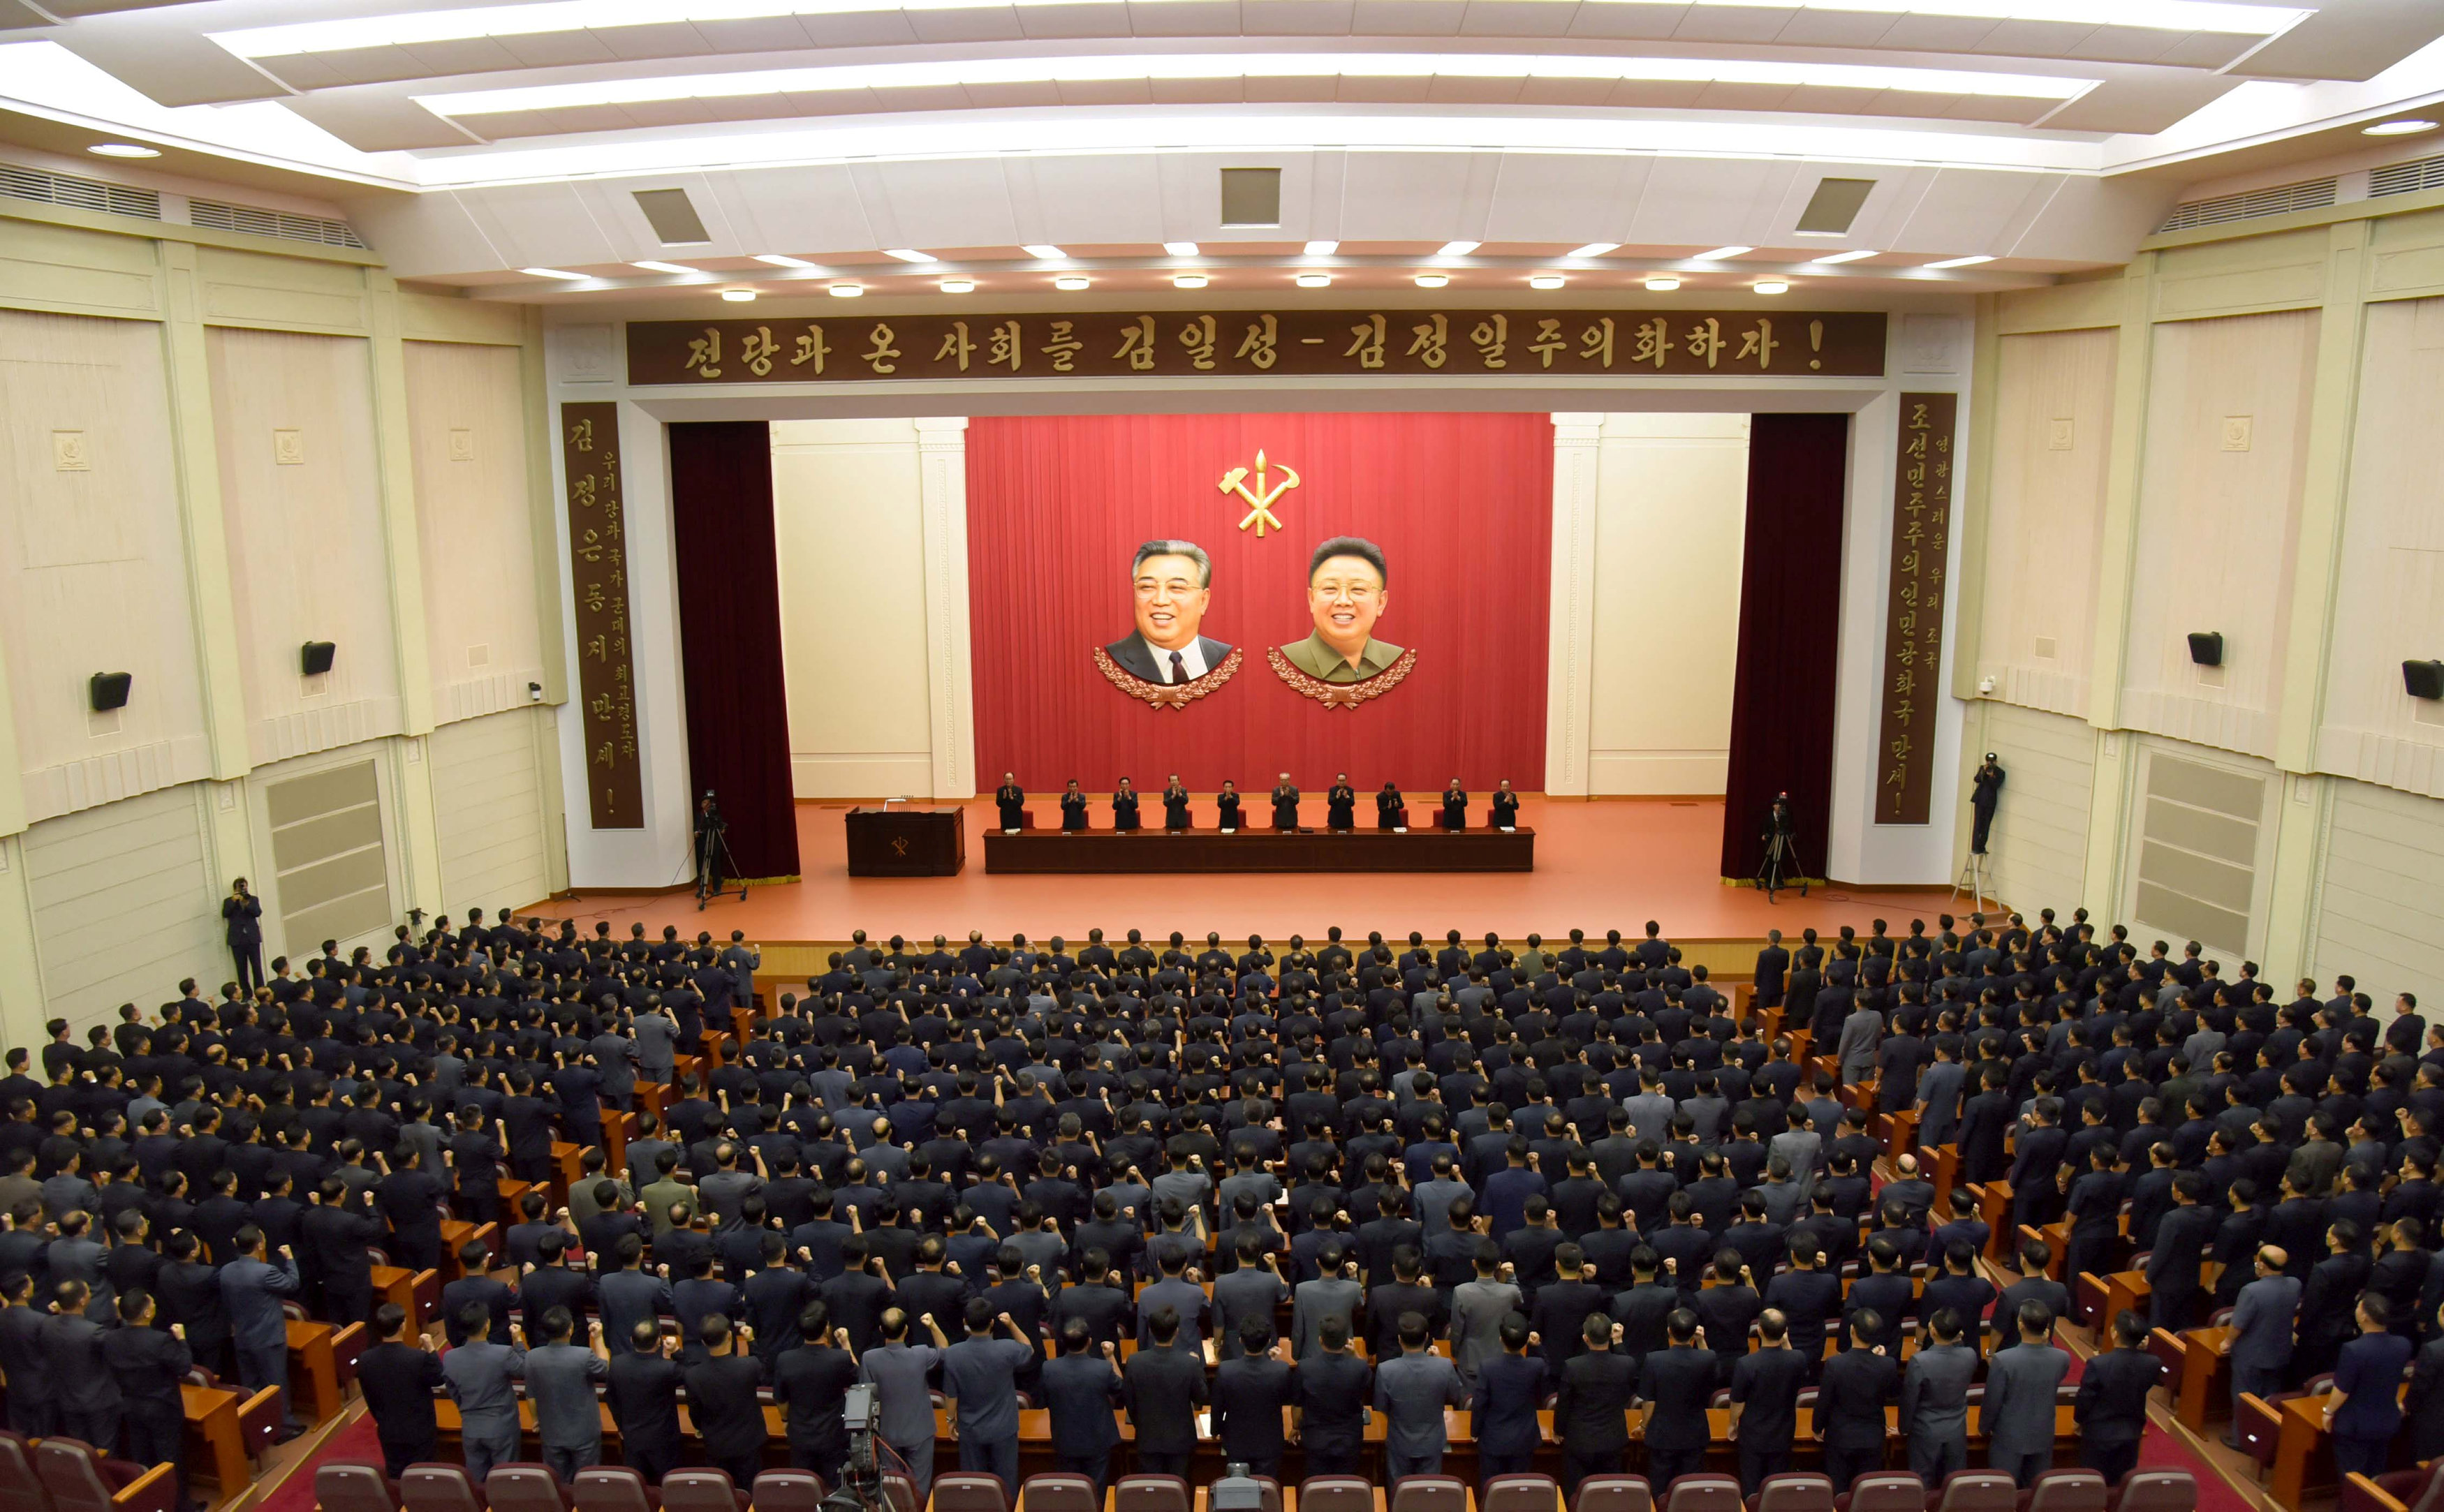 المئات فى كوريا الشمالية يتعهدون بحرب مقدسة ضد الولايات المتحدة